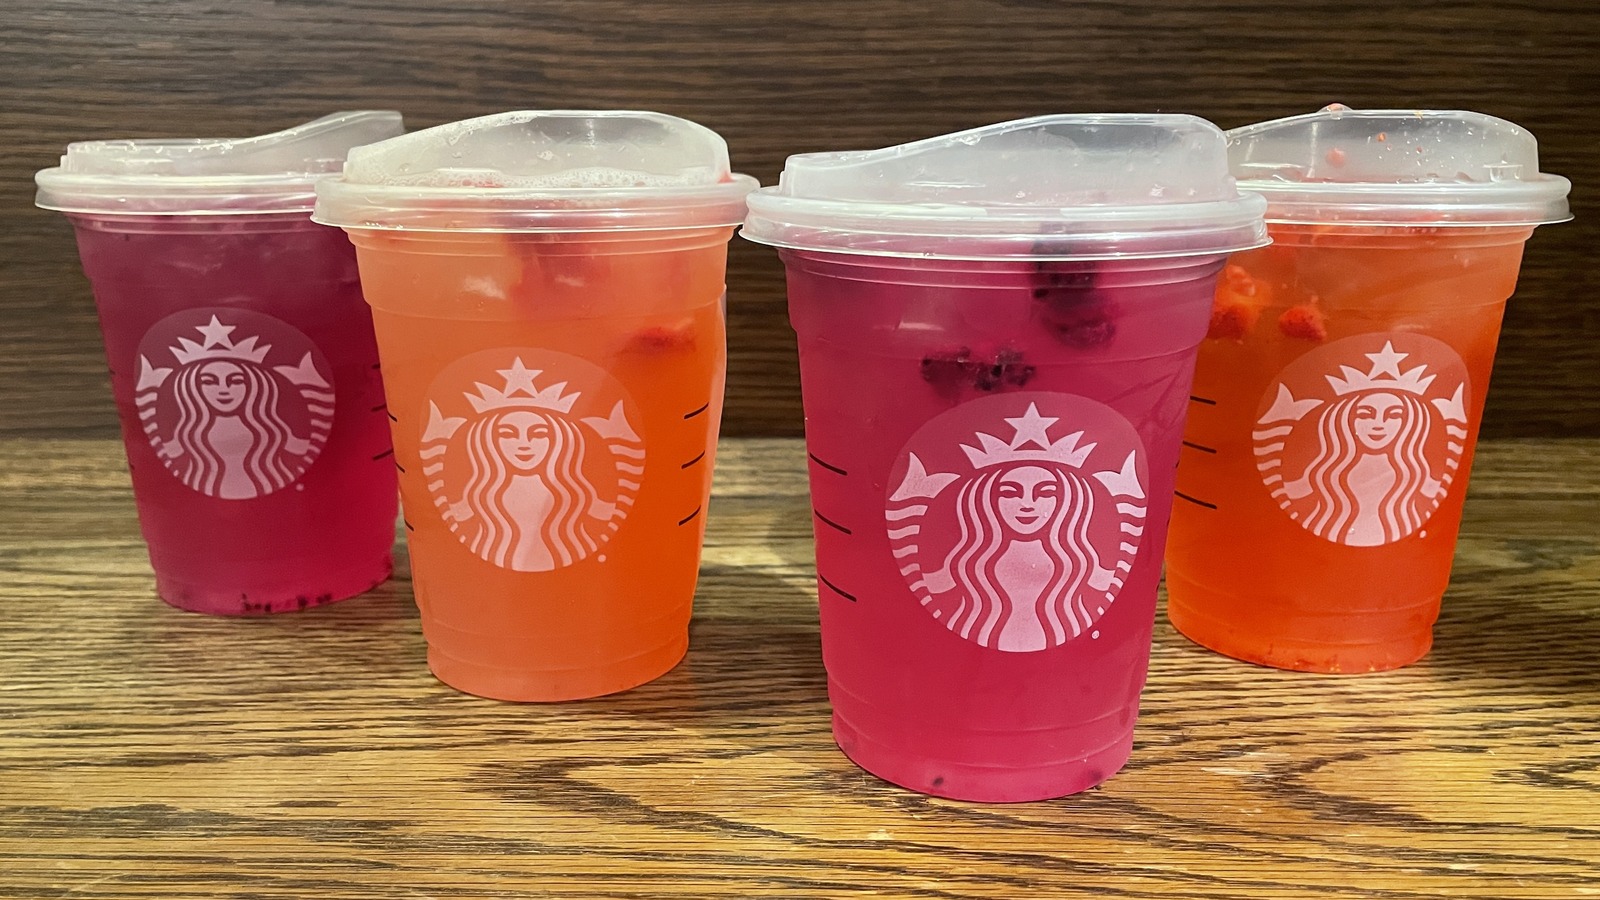 Starbucks Strawberry Mango Refresher Next to Other Refreshers